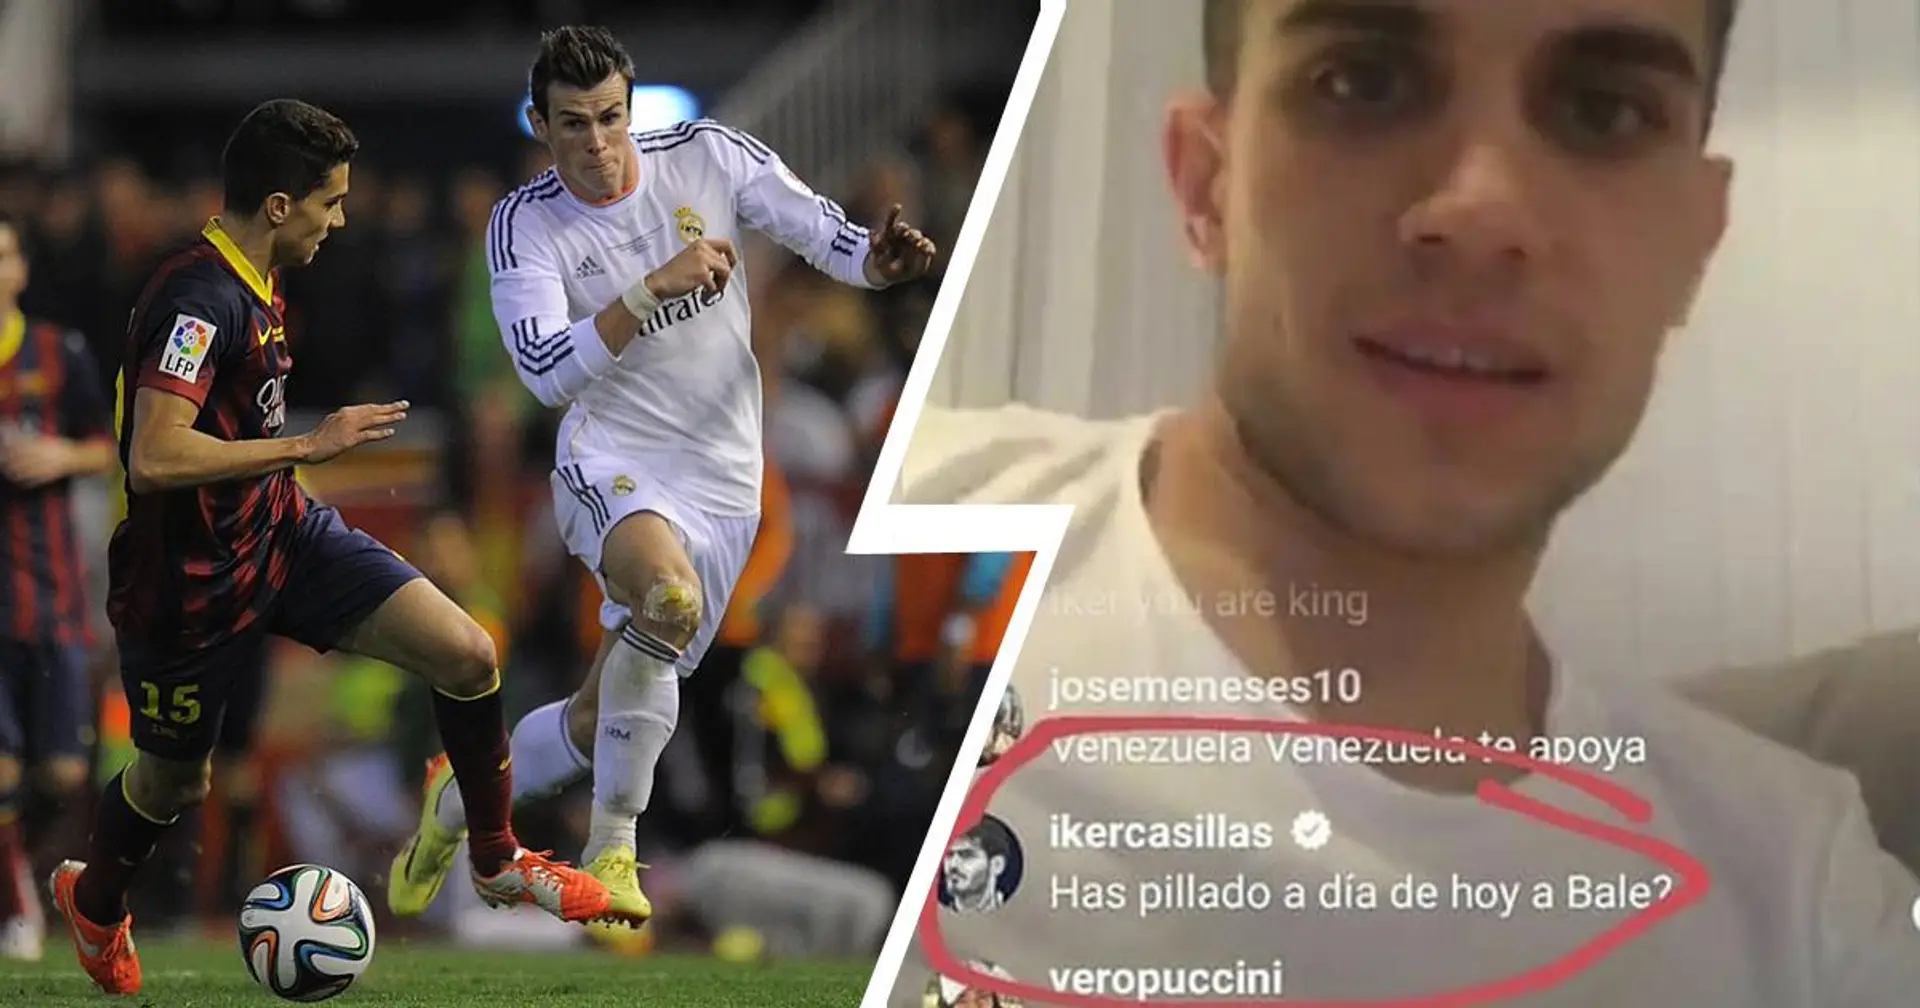 "As-tu attrapé Bale aujourd'hui?": Casillas se moque de Marc Bartra en rappelant l'épisode Classico préféré de tous les fans de Madrid